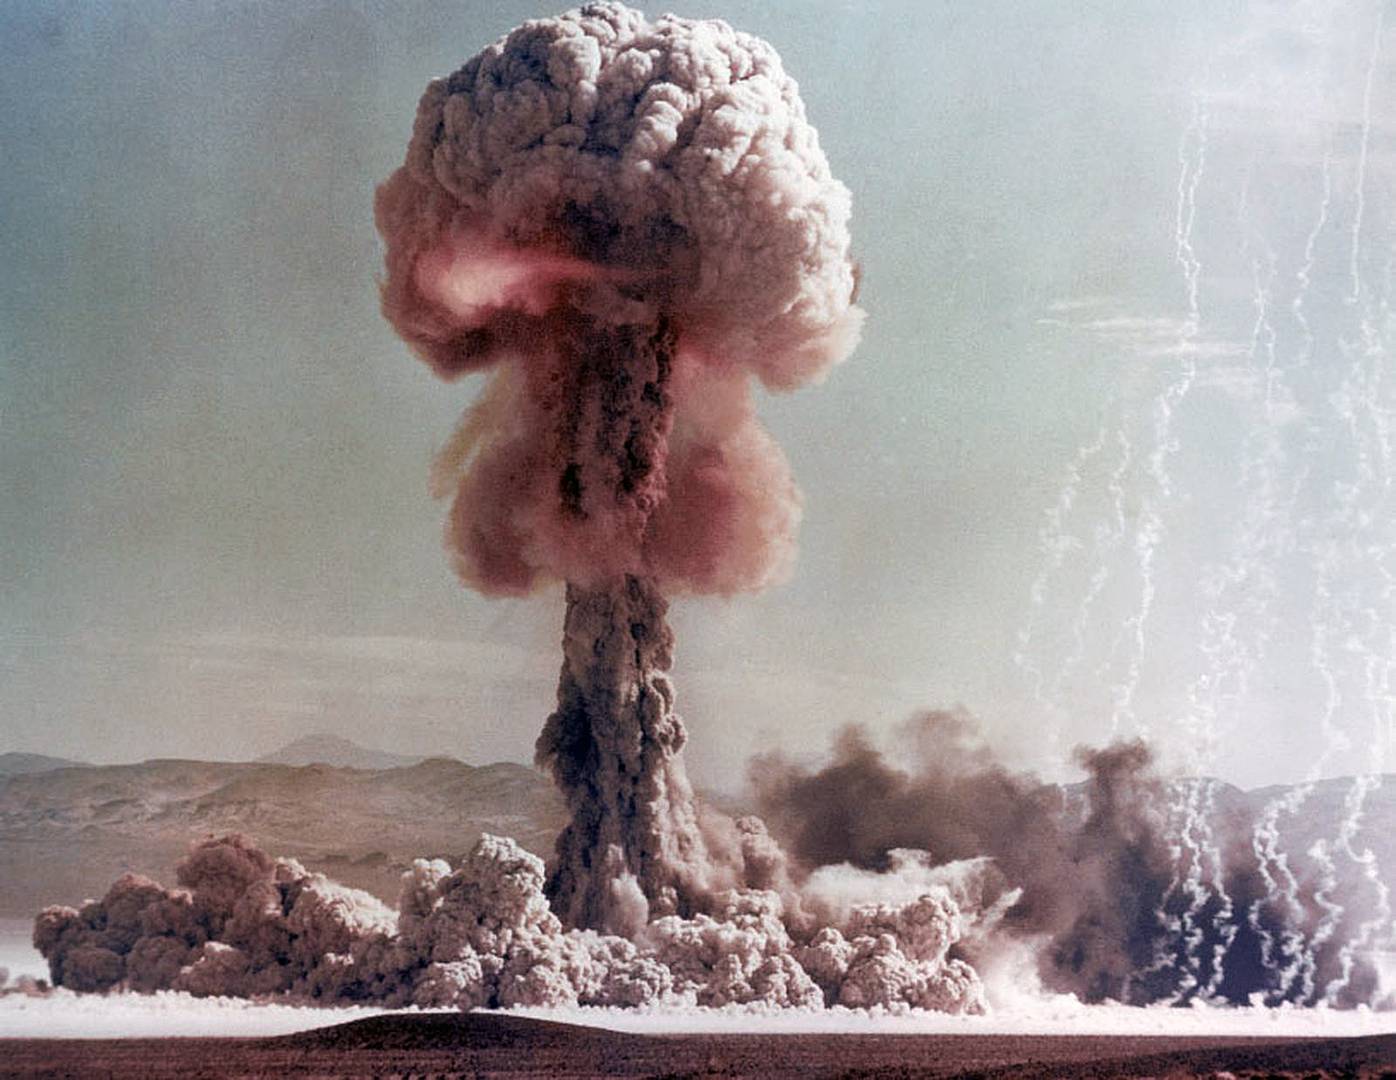 Испытание ядерного оружия, США, 1950-е гг.